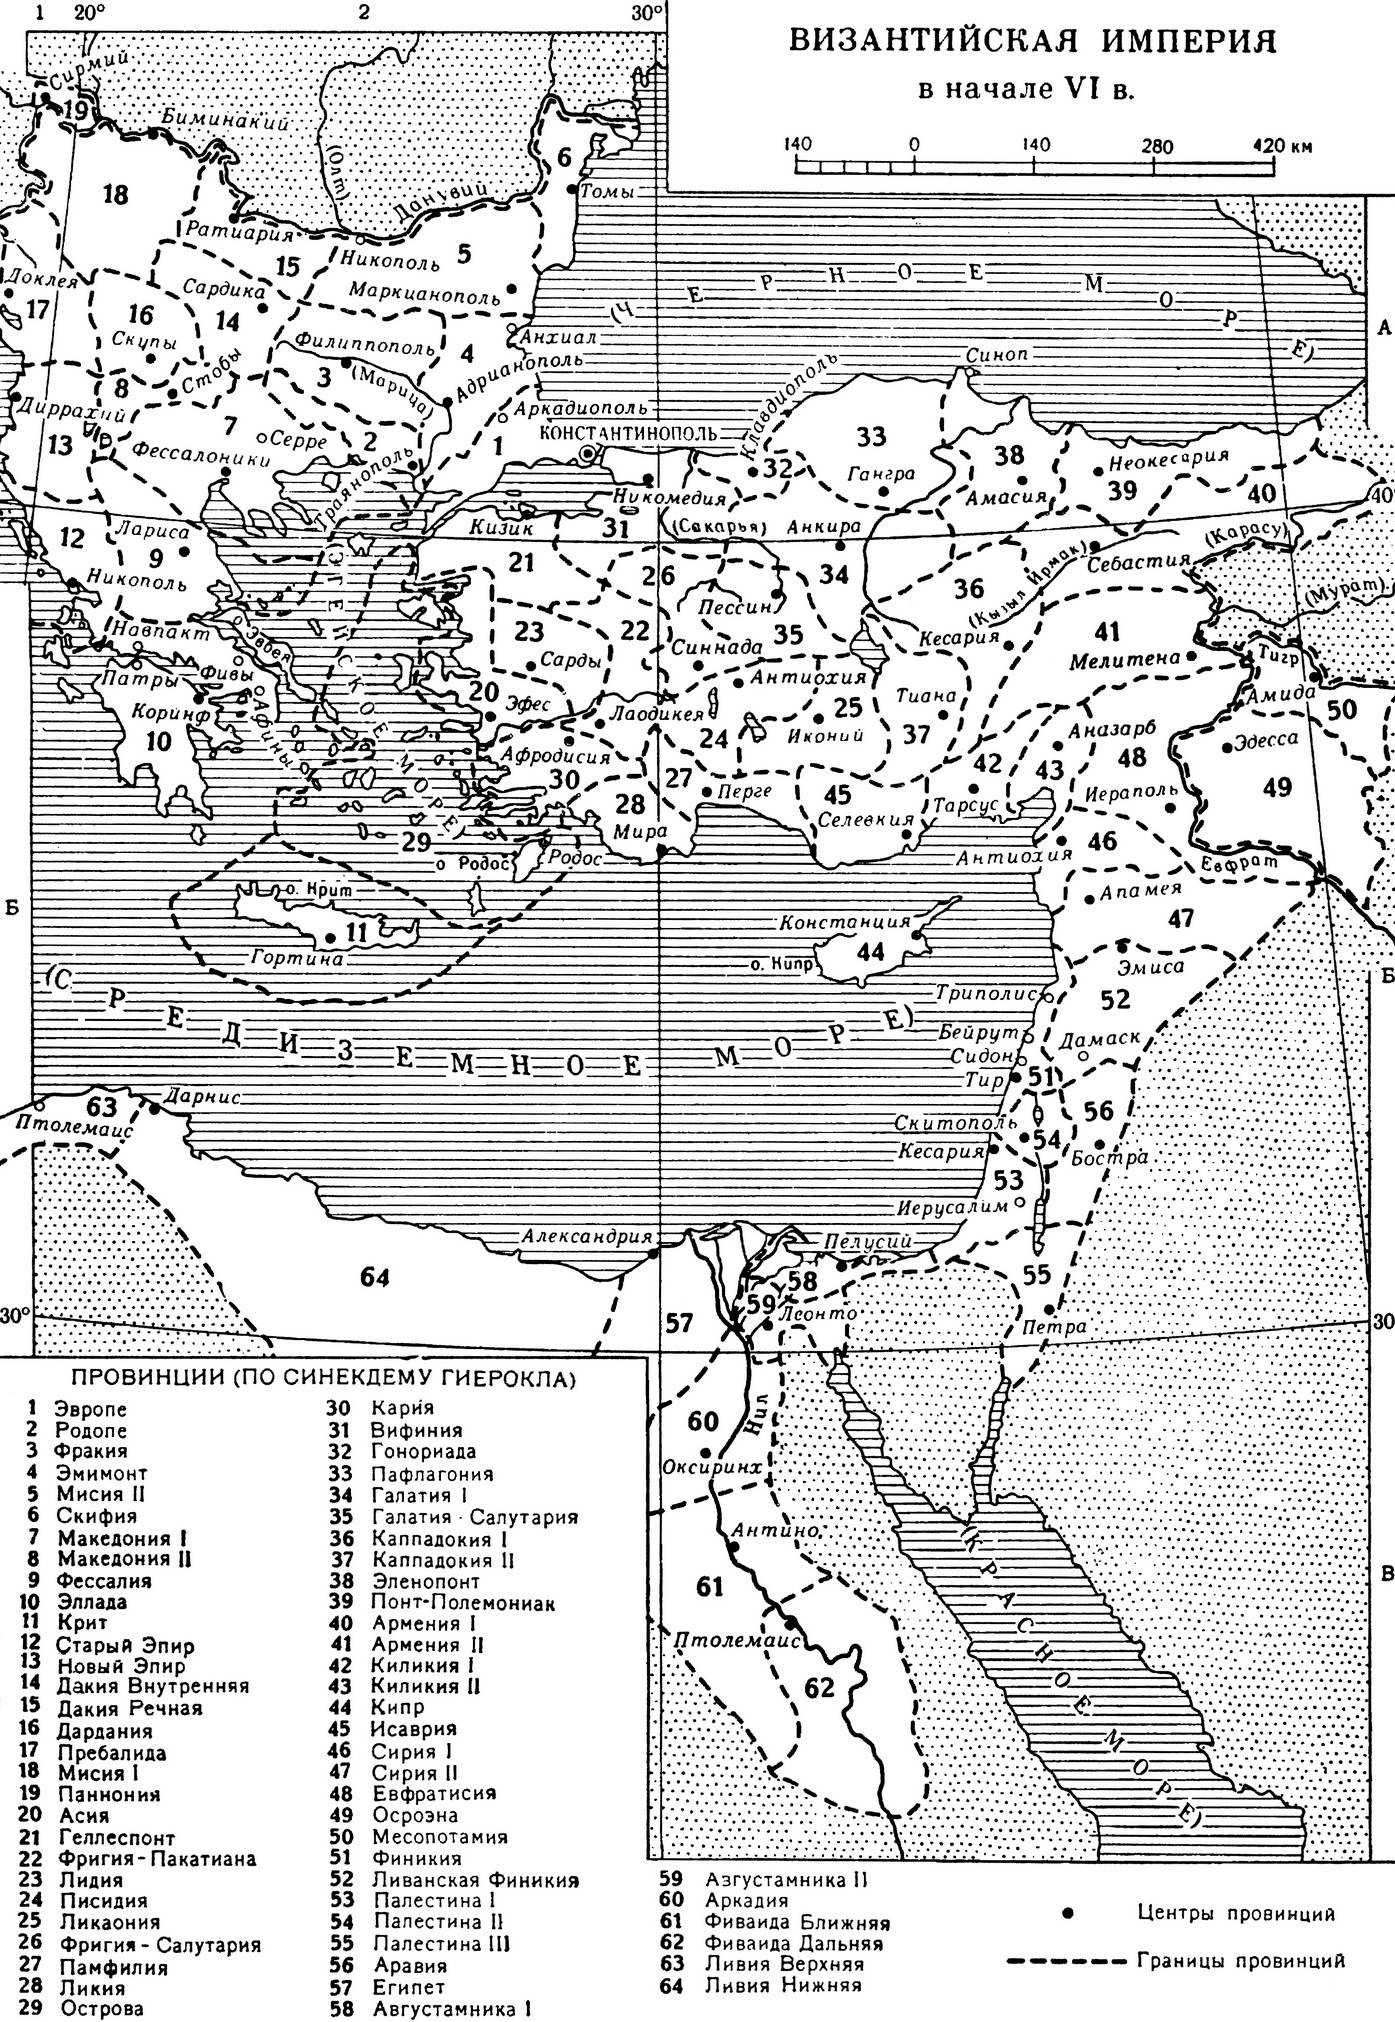 Где византия на карте. Византийская Империя в 5 веке карта. Карта Византии в период расцвета. Максимальные границы Византийской империи. Карта Византийской империи в 6 веке.